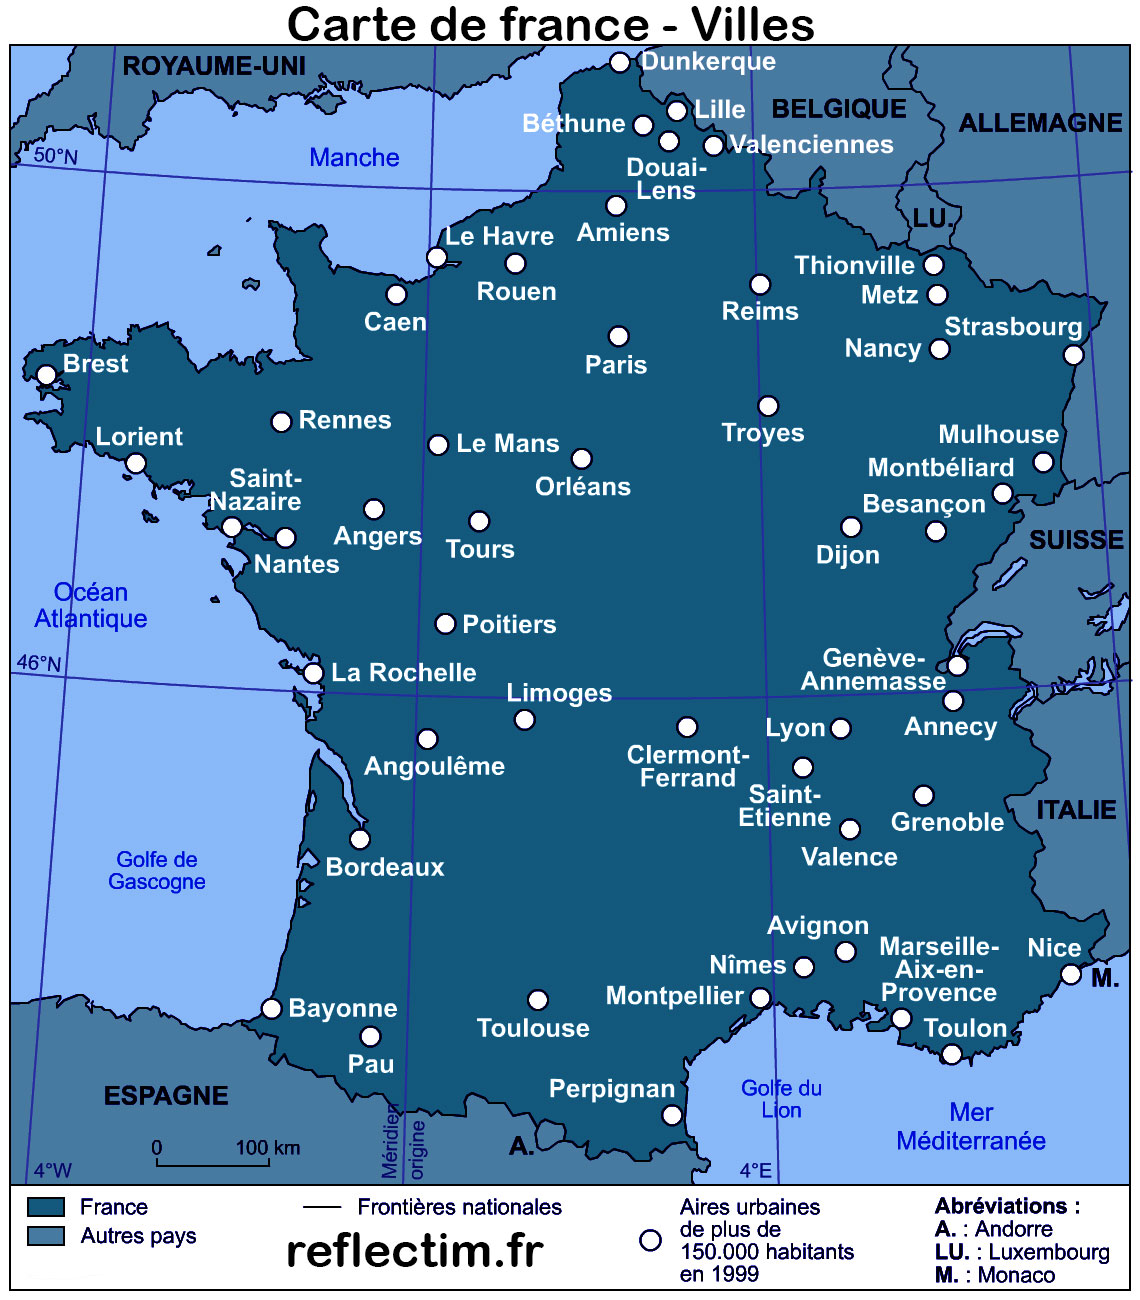 Carte de France ville